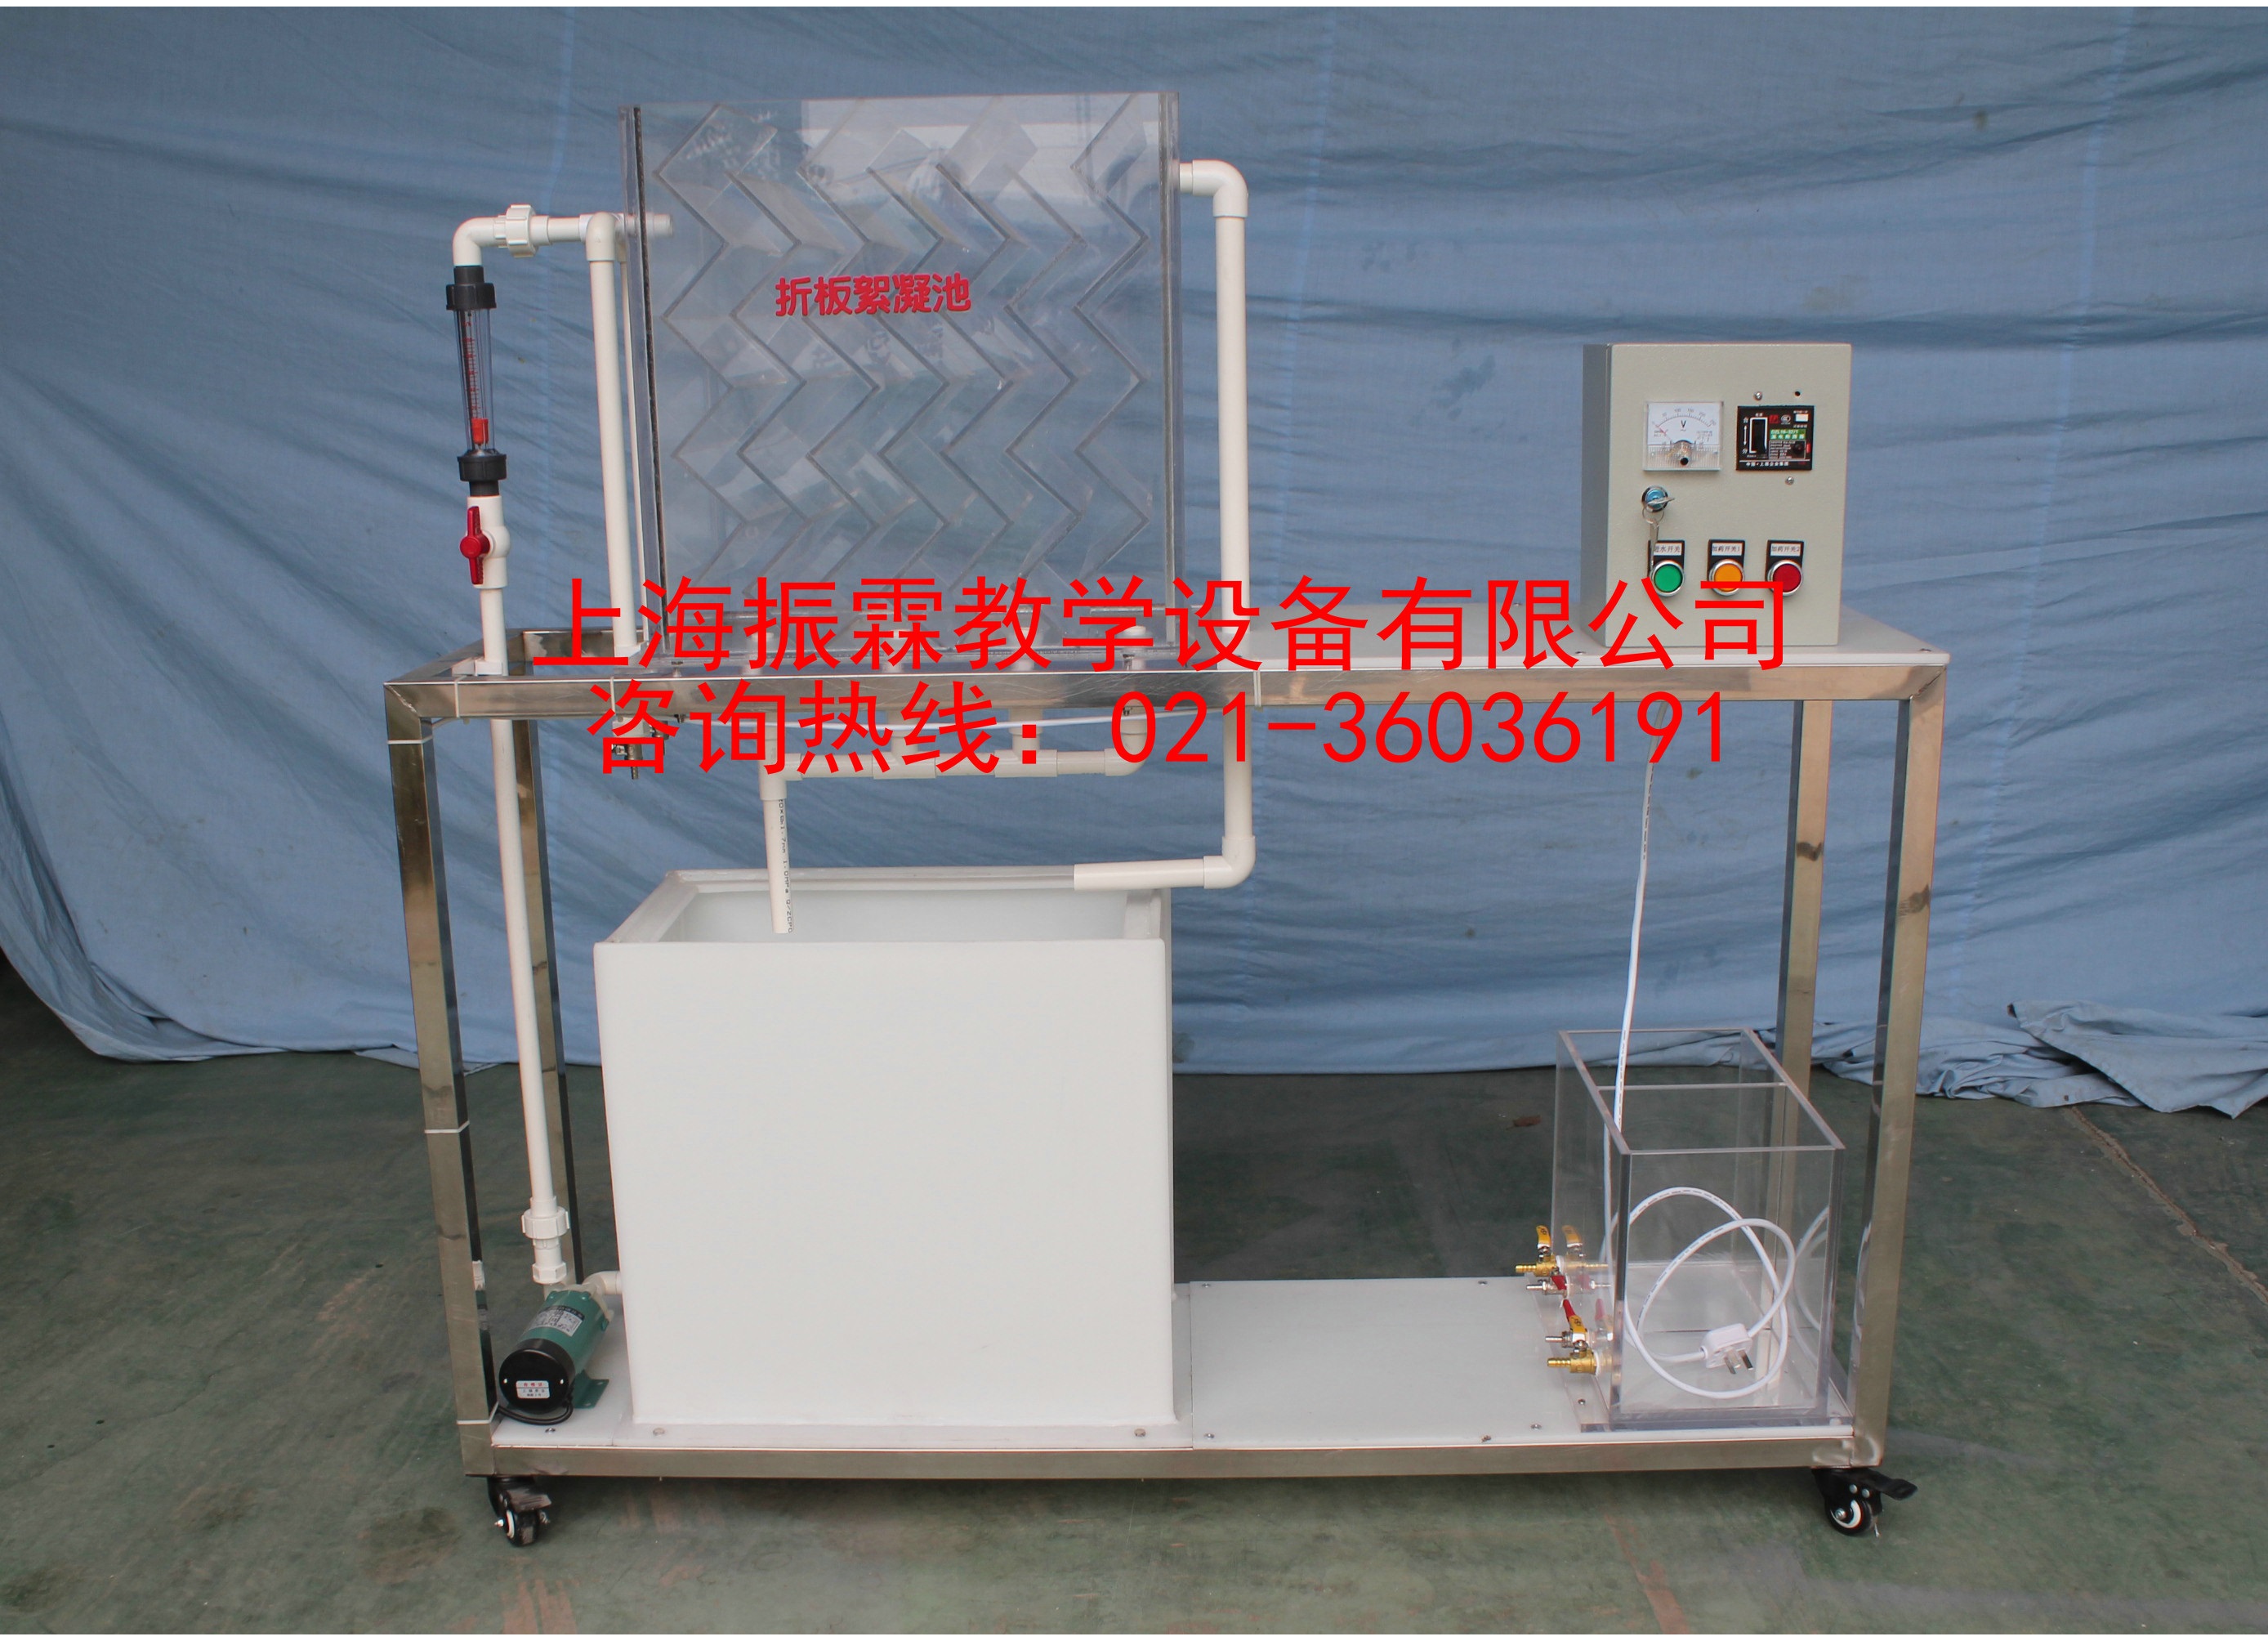 折板絮凝池系统,折板絮凝池实验装置,折板絮凝池--上海振霖教学设备有限公司